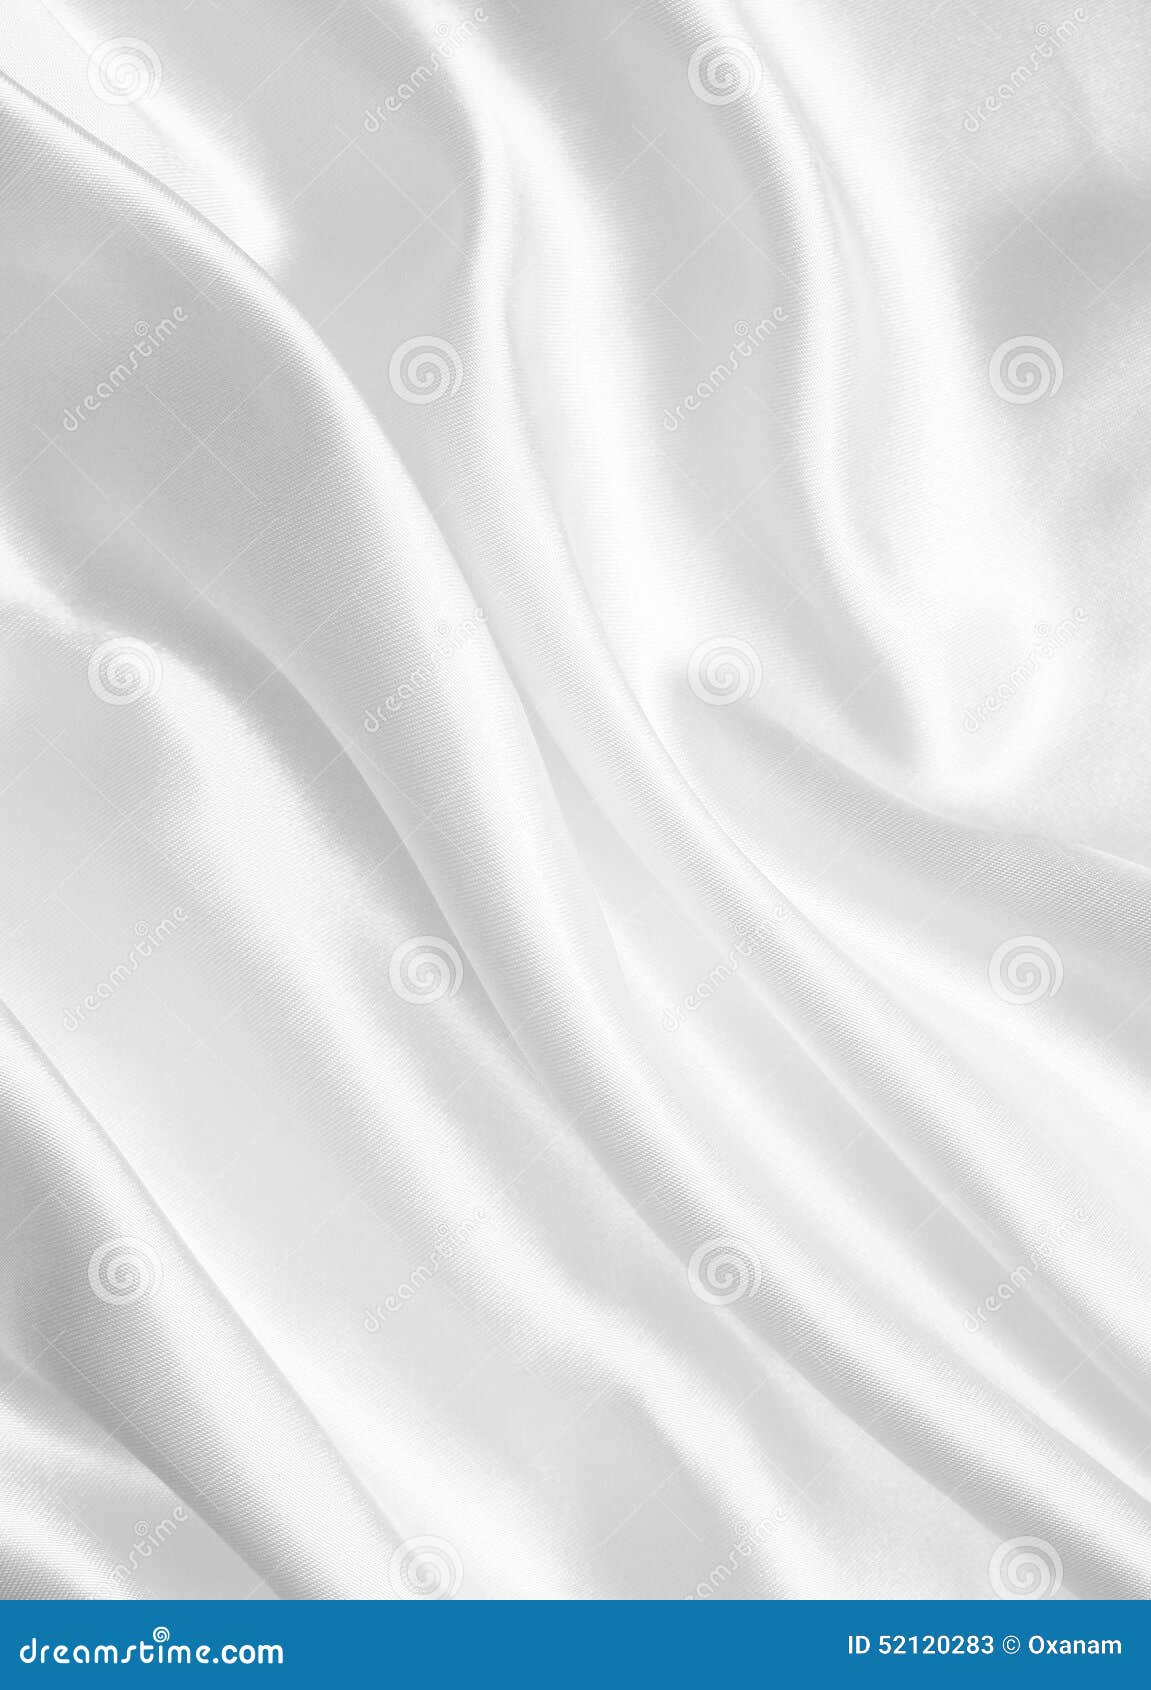 Smooth Elegant White Silk Or Satin As Wedding Background Stock Photo  52120283 - Megapixl